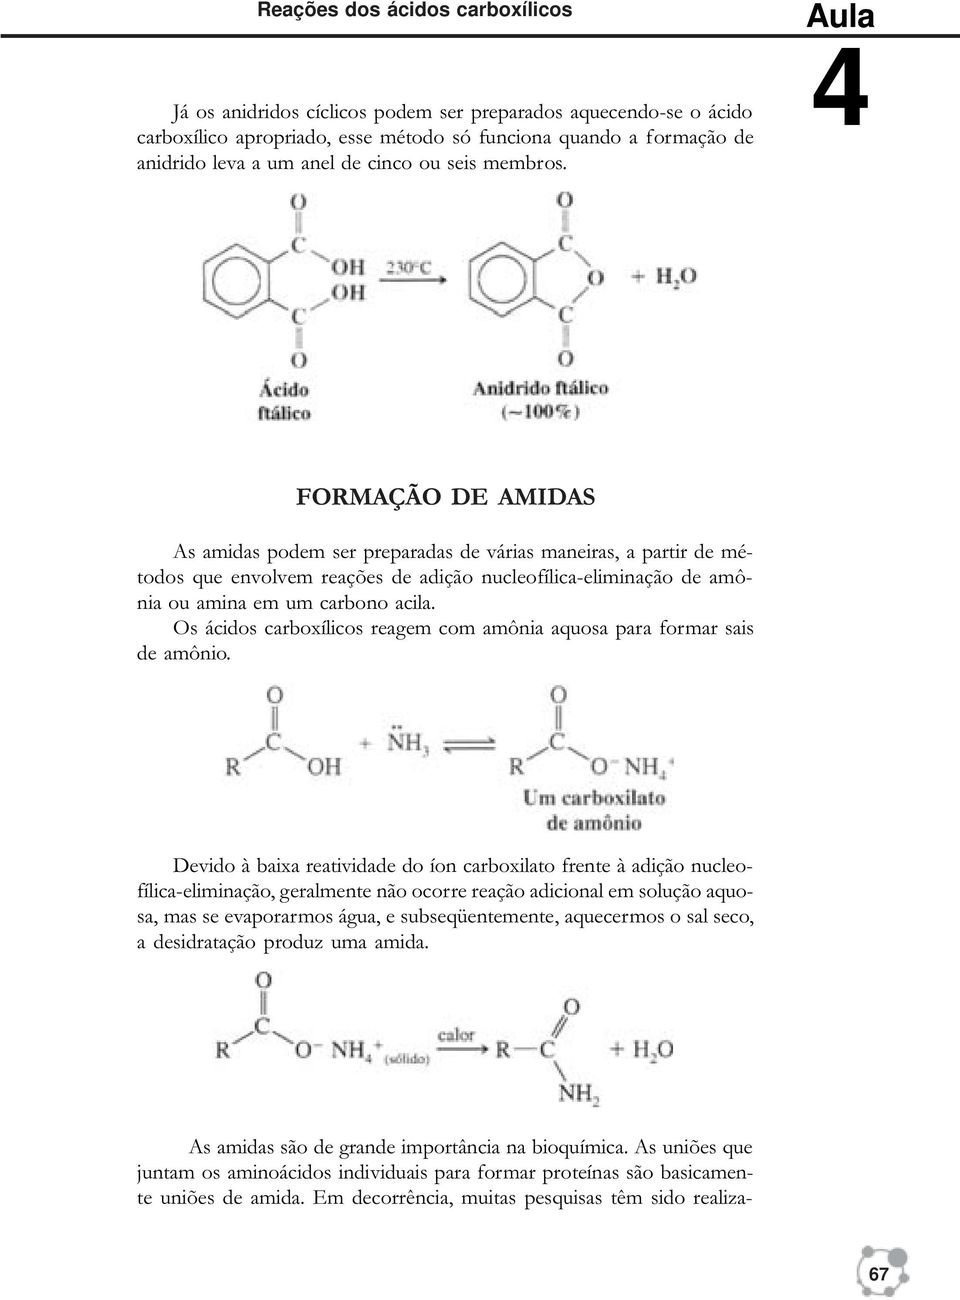 FORMAÇÃO DE AMIDAS As amidas podem ser preparadas de várias maneiras, a partir de métodos que envolvem reações de adição nucleofílica-eliminação de amônia ou amina em um carbono acila.